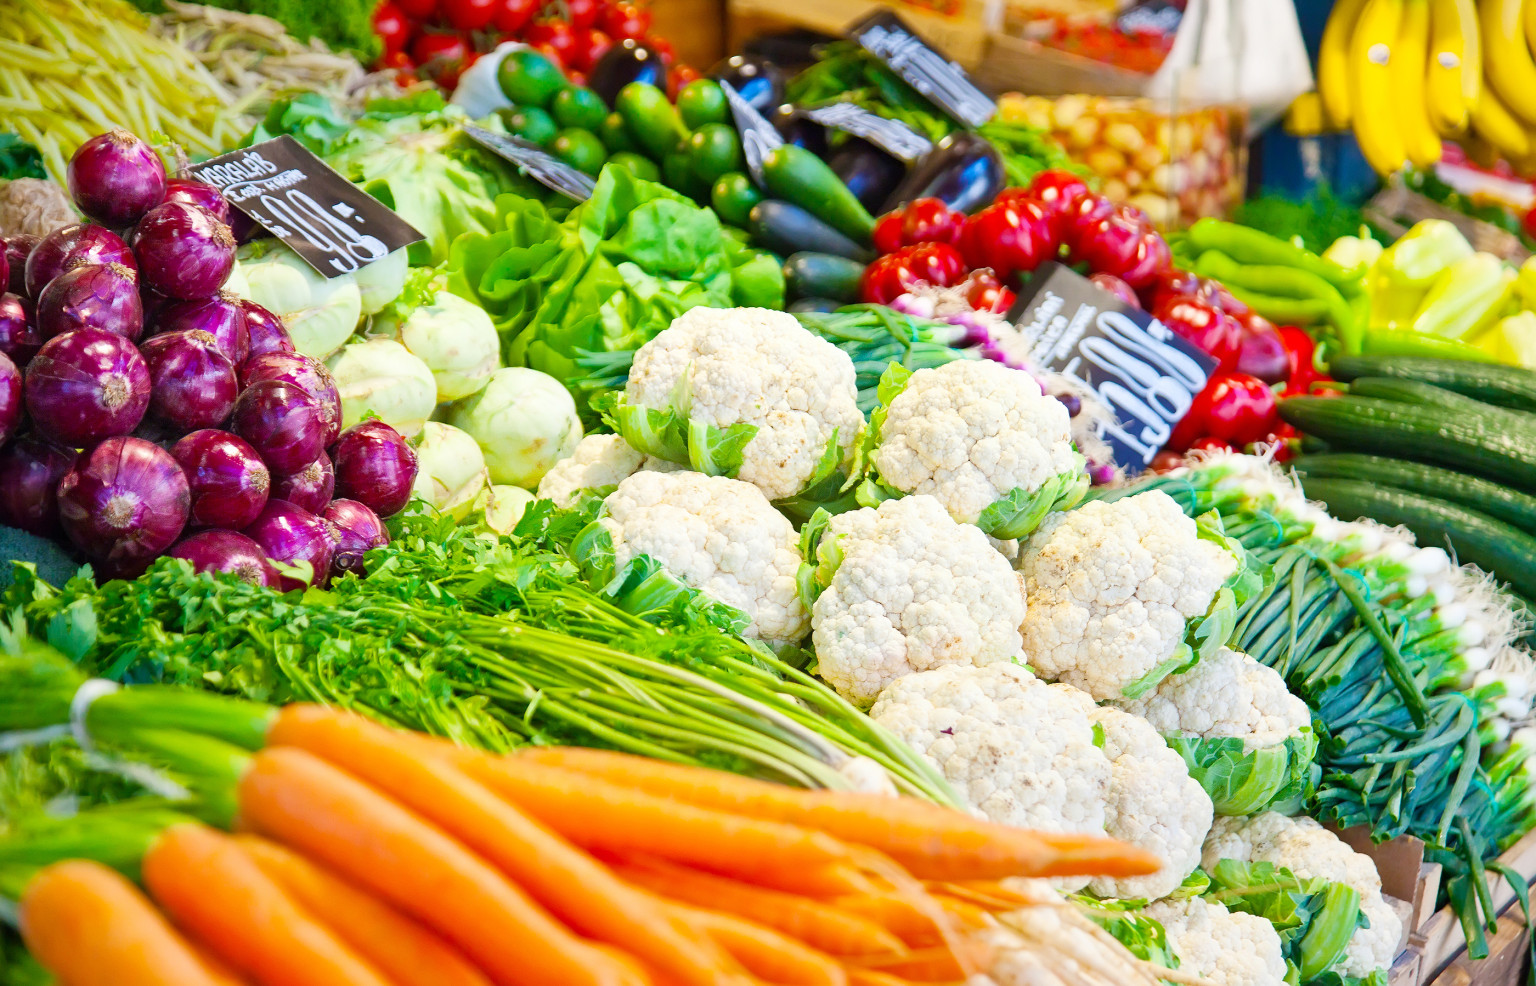 Xuất khẩu rau quả: Liên tục tăng trưởng ấn tượng